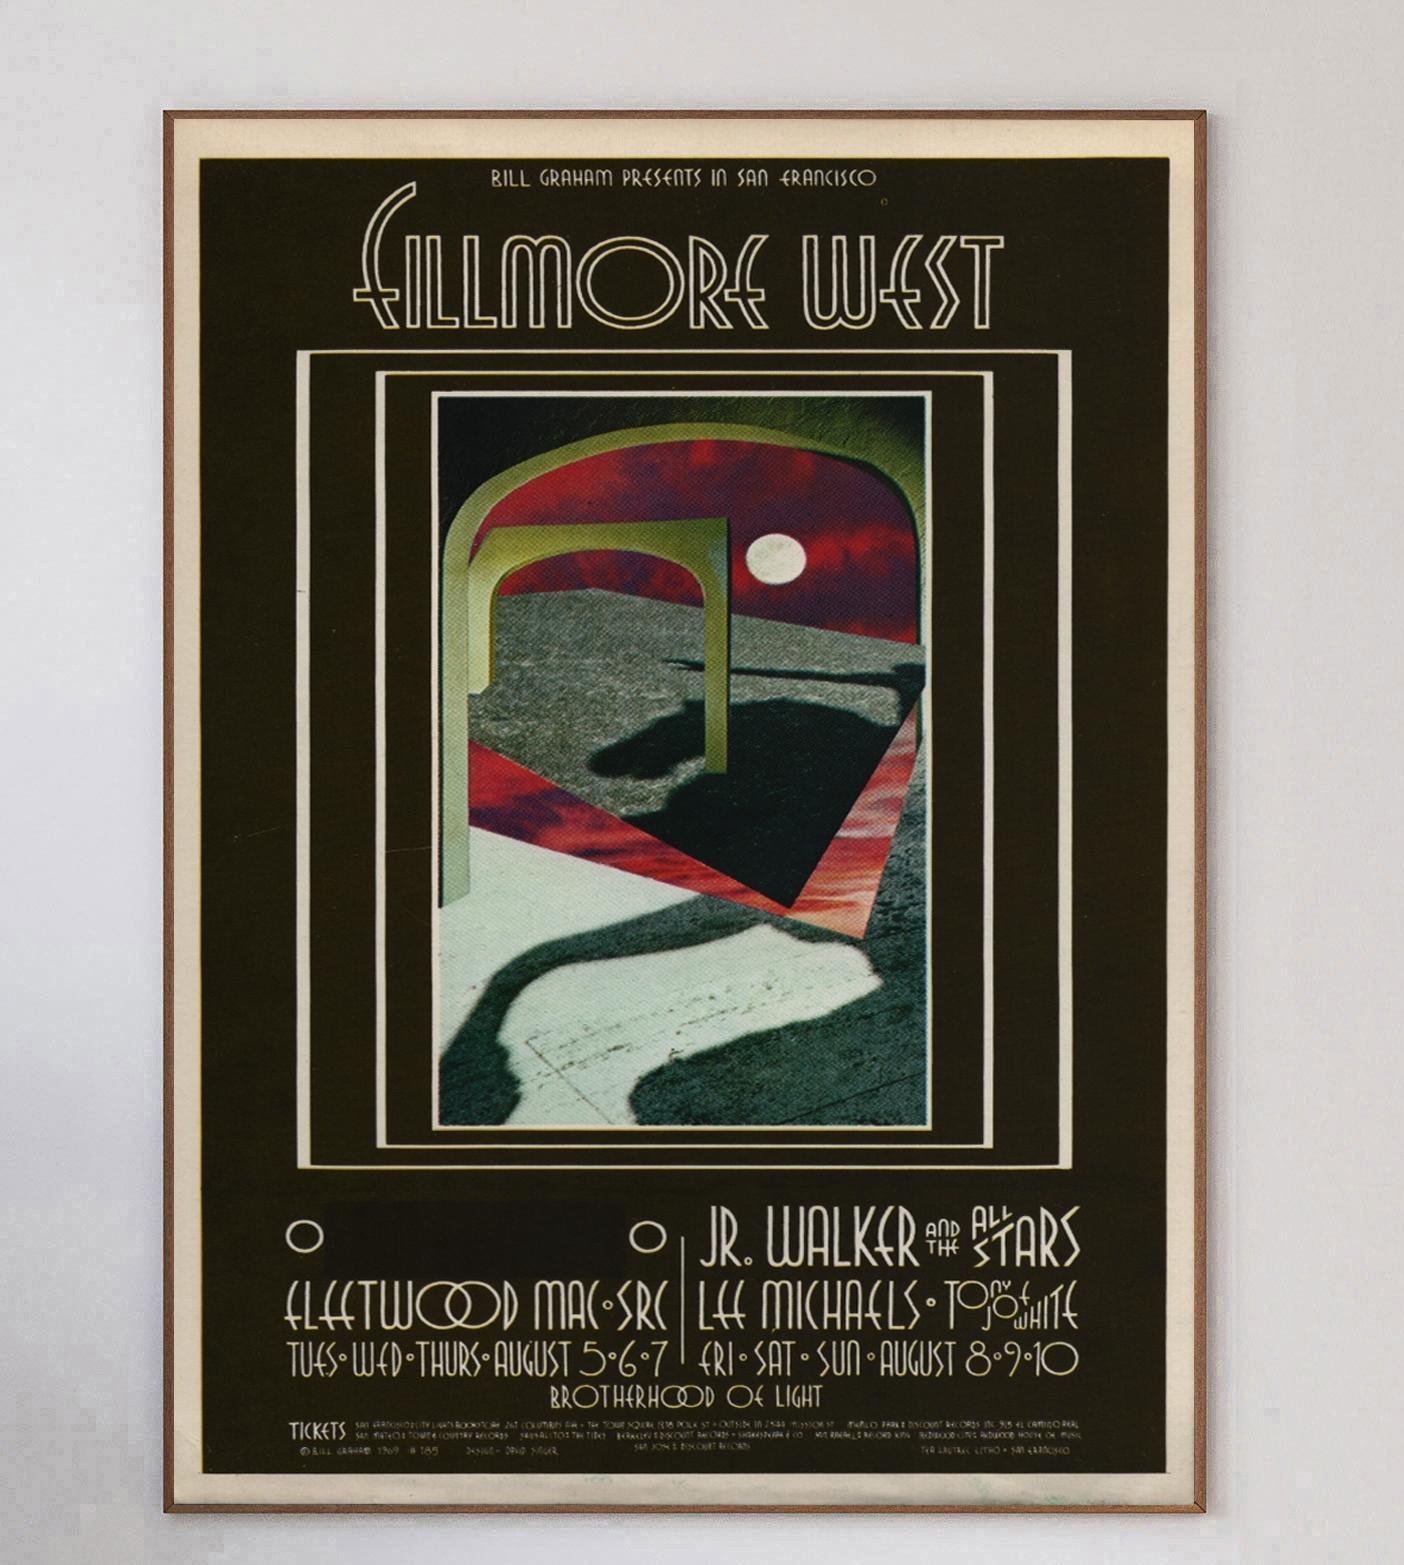 Dieses wunderschöne Plakat wurde 1969 vom Konzertplakatkünstler David Singer entworfen, um ein Live-Konzert von Fleetwood Mac im weltberühmten Fillmore West in San Francisco zu bewerben. Bill Graham-Veranstaltungen wie diese waren bekannt für ihre